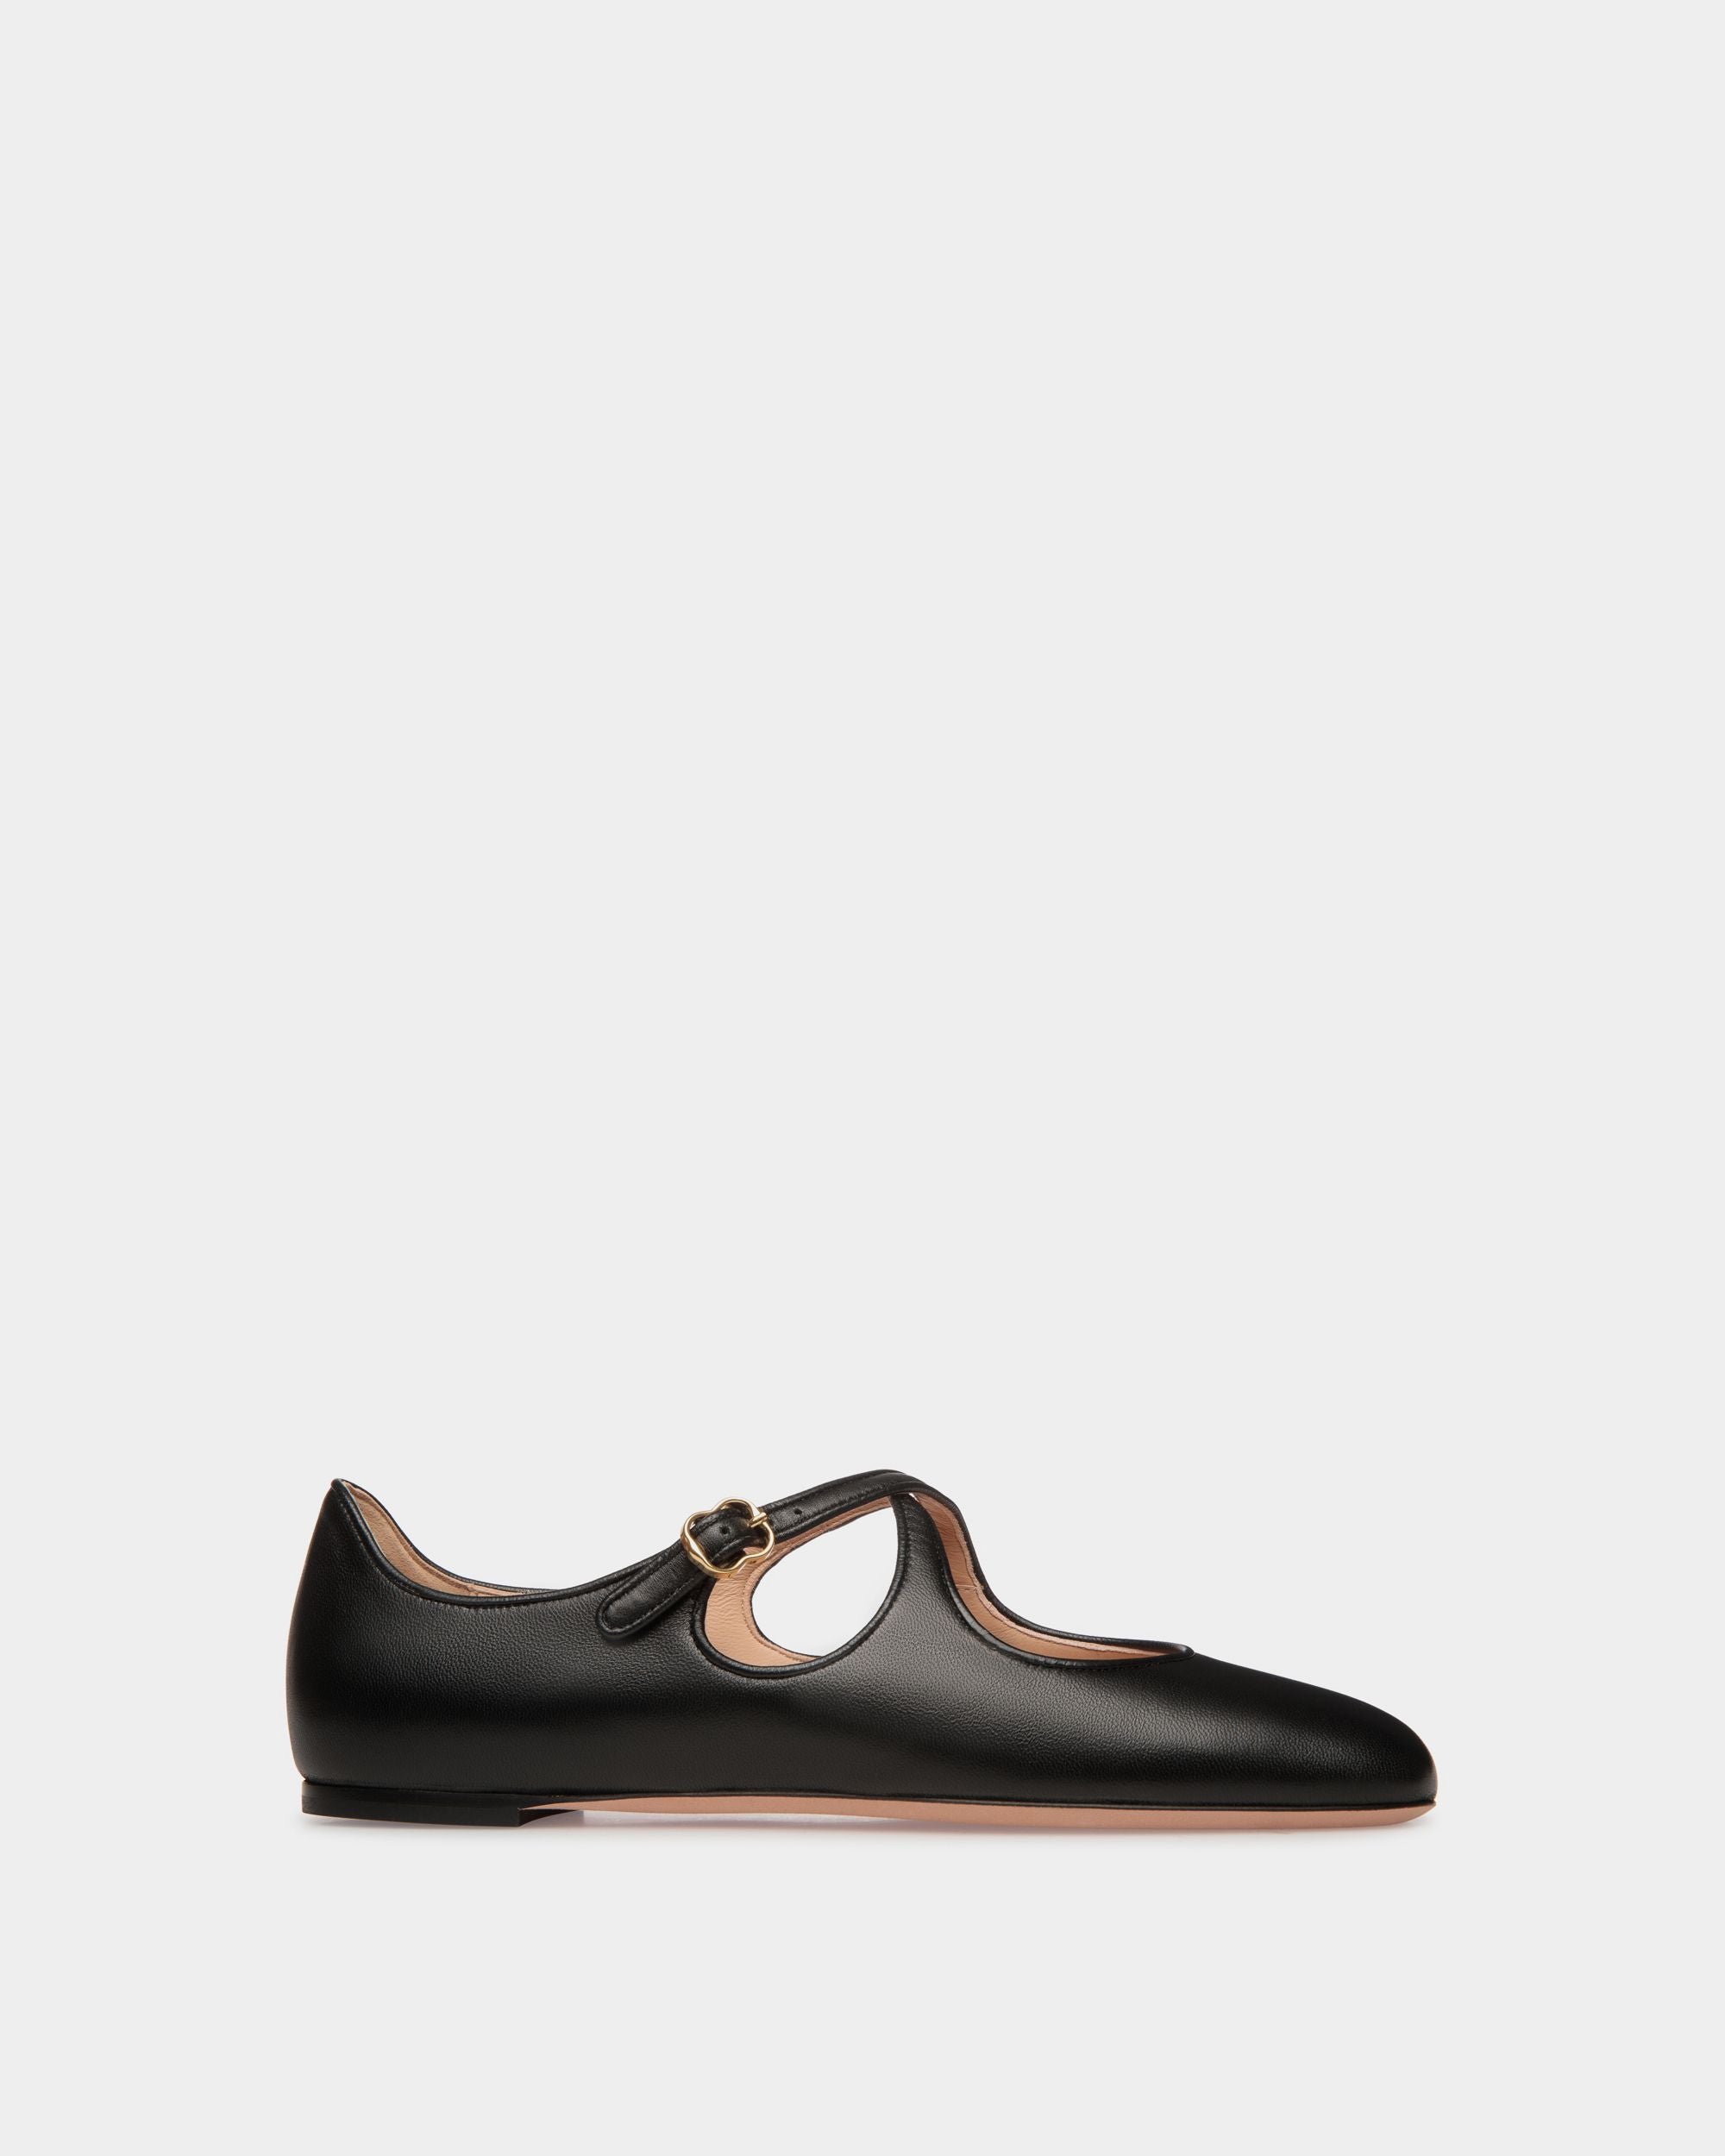 Ballyrina | Chaussure à talon plat pour femme en cuir nappa noir | Bally | Still Life Côté